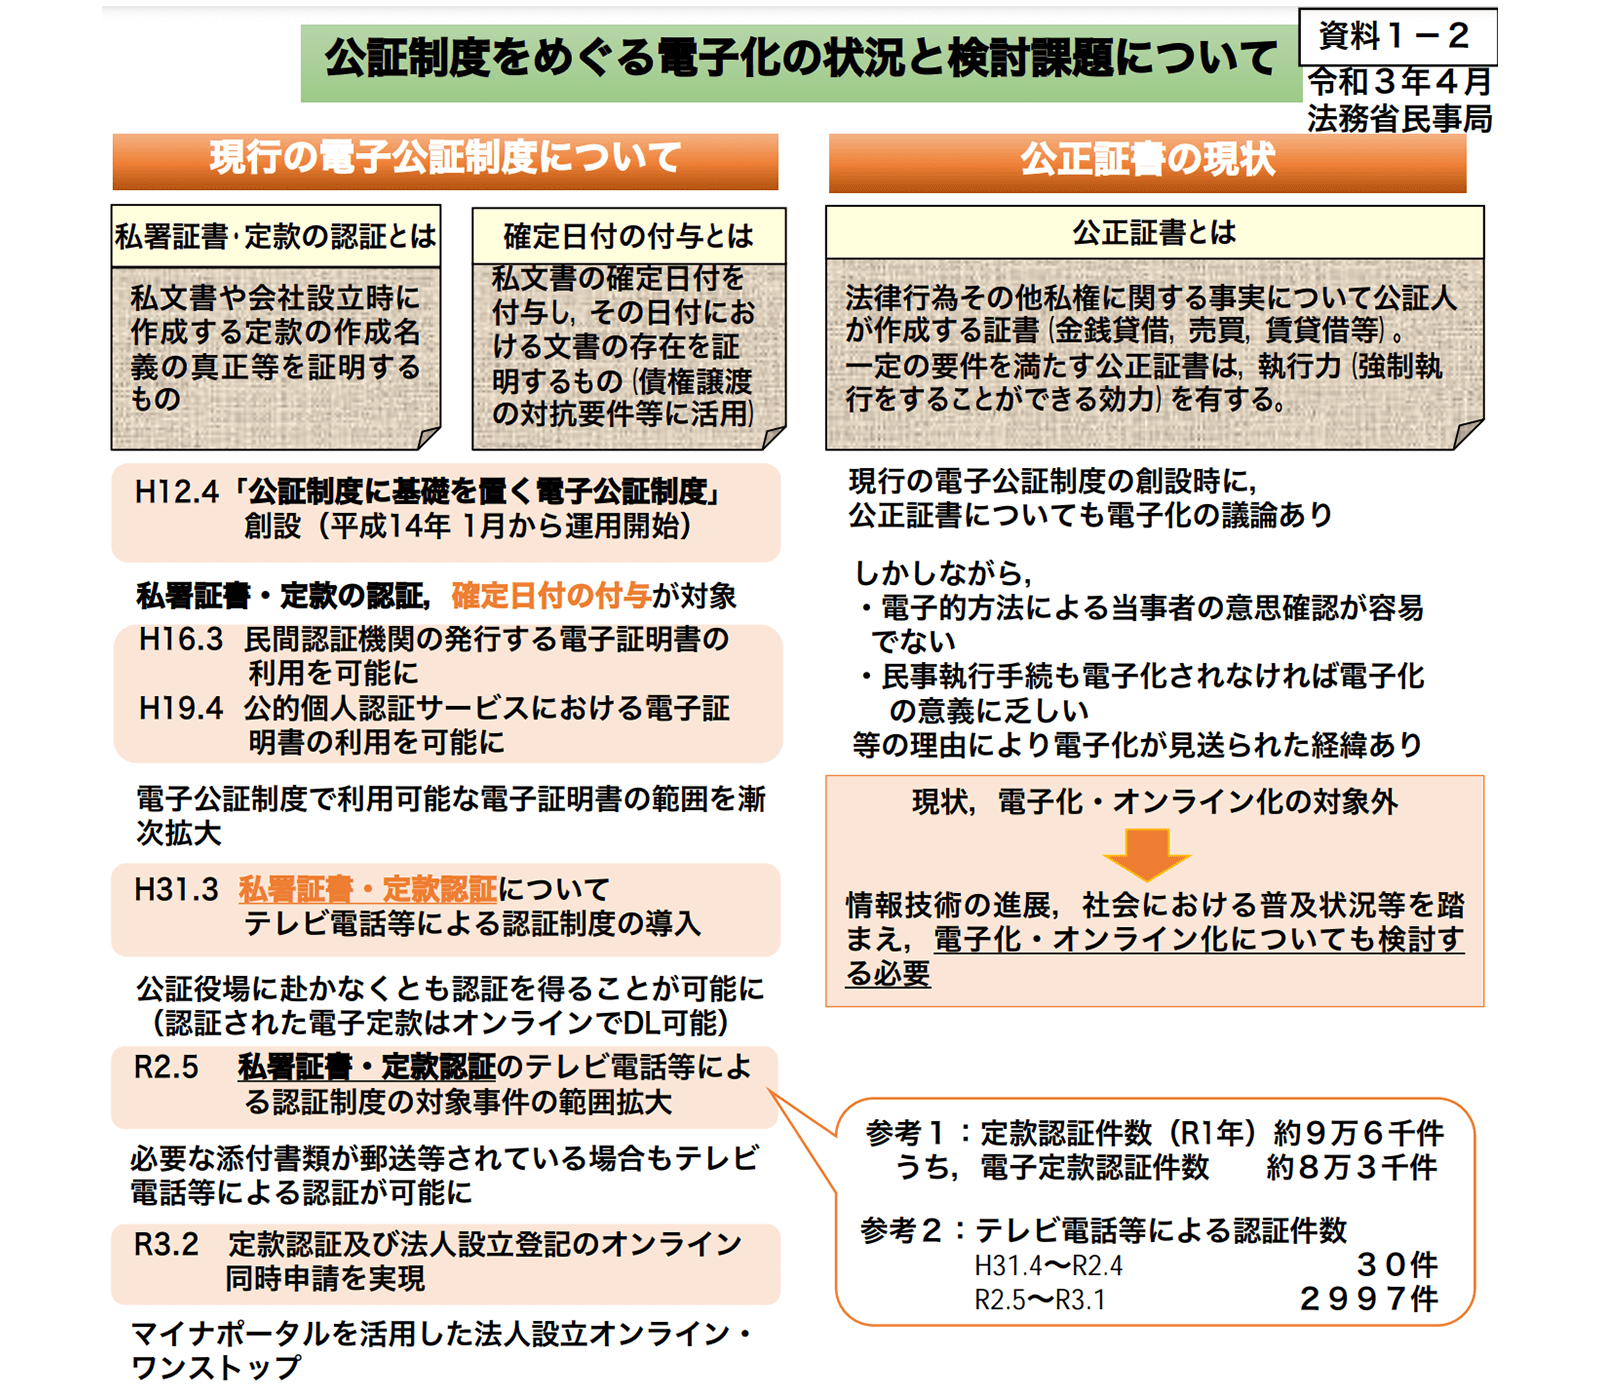 https://www8.cao.go.jp/kisei-kaikaku/kisei/meeting/wg/toushi/20210413/210413toushi02.pdf 2021年5月31日最終アクセス